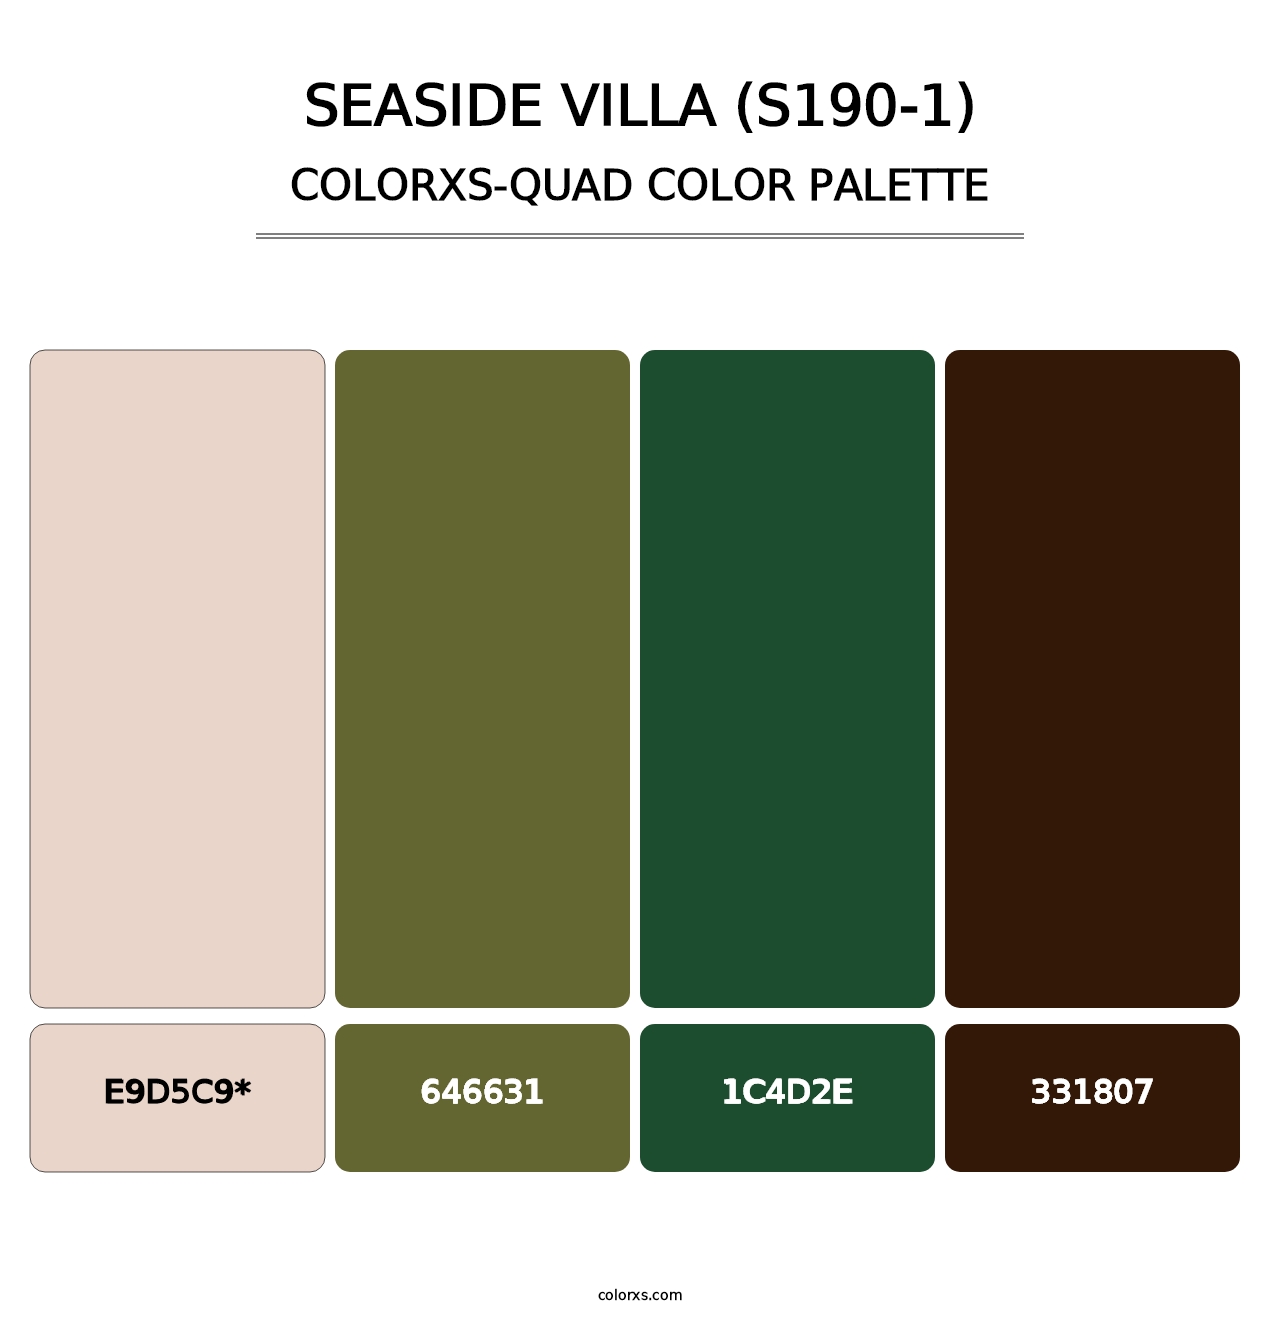 Seaside Villa (S190-1) - Colorxs Quad Palette